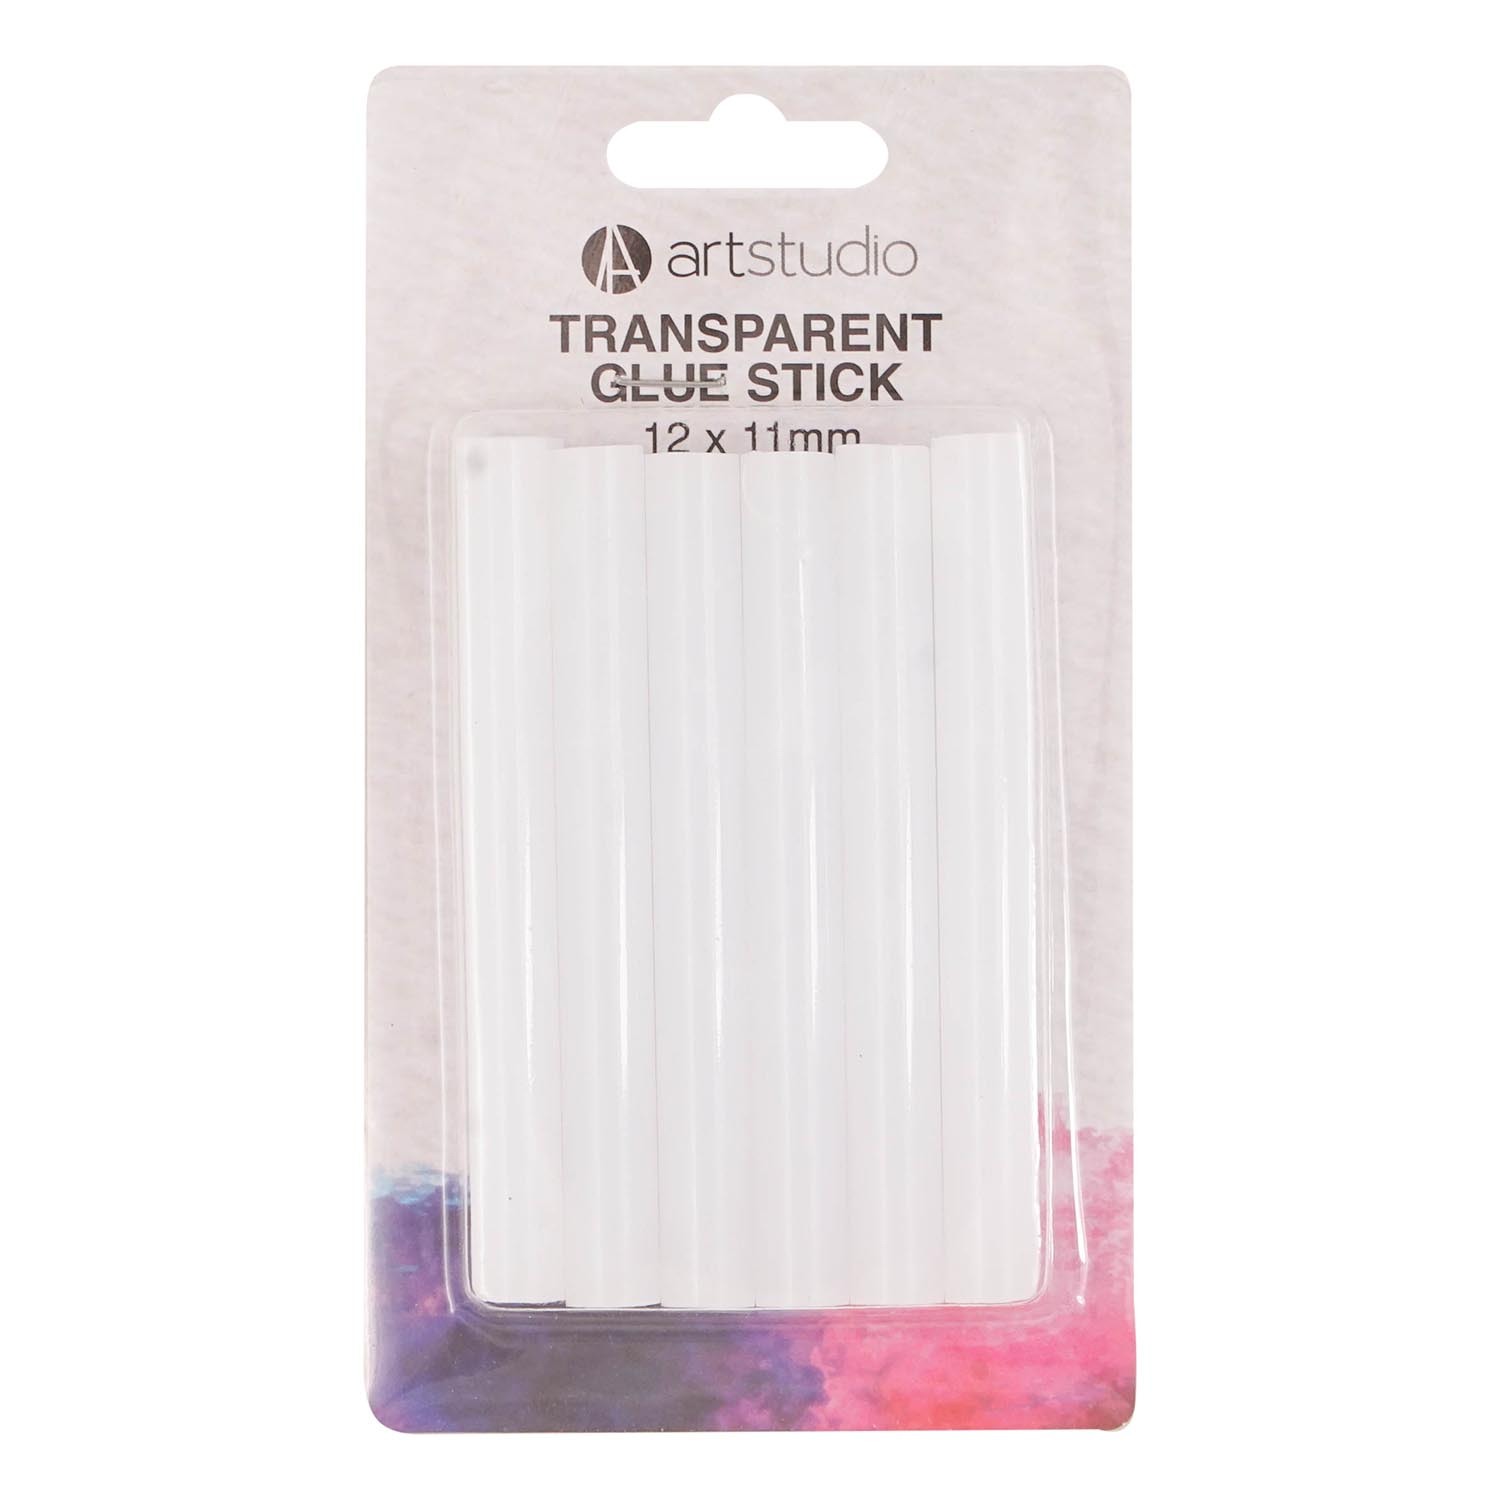 Art Studio Transparent Glue Stick - 12 / 11cm Image 1